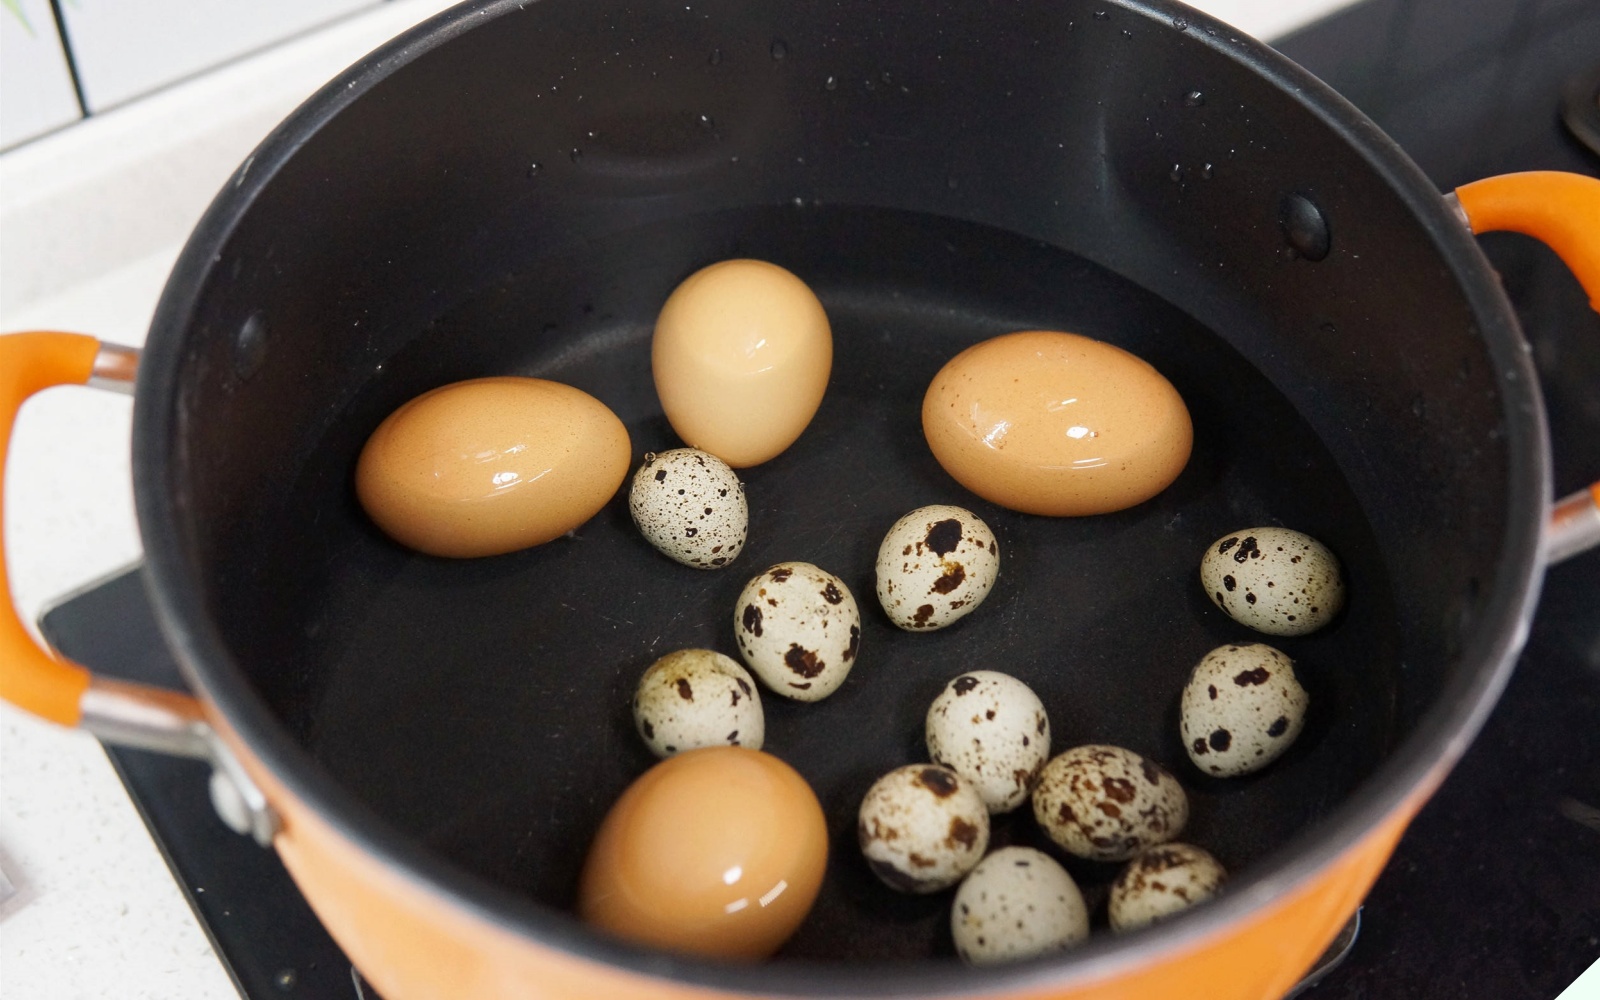 Luộc trứng kiểu này cực kỳ nguy hiểm, nhiều người Việt không biết cứ tưởng ngon